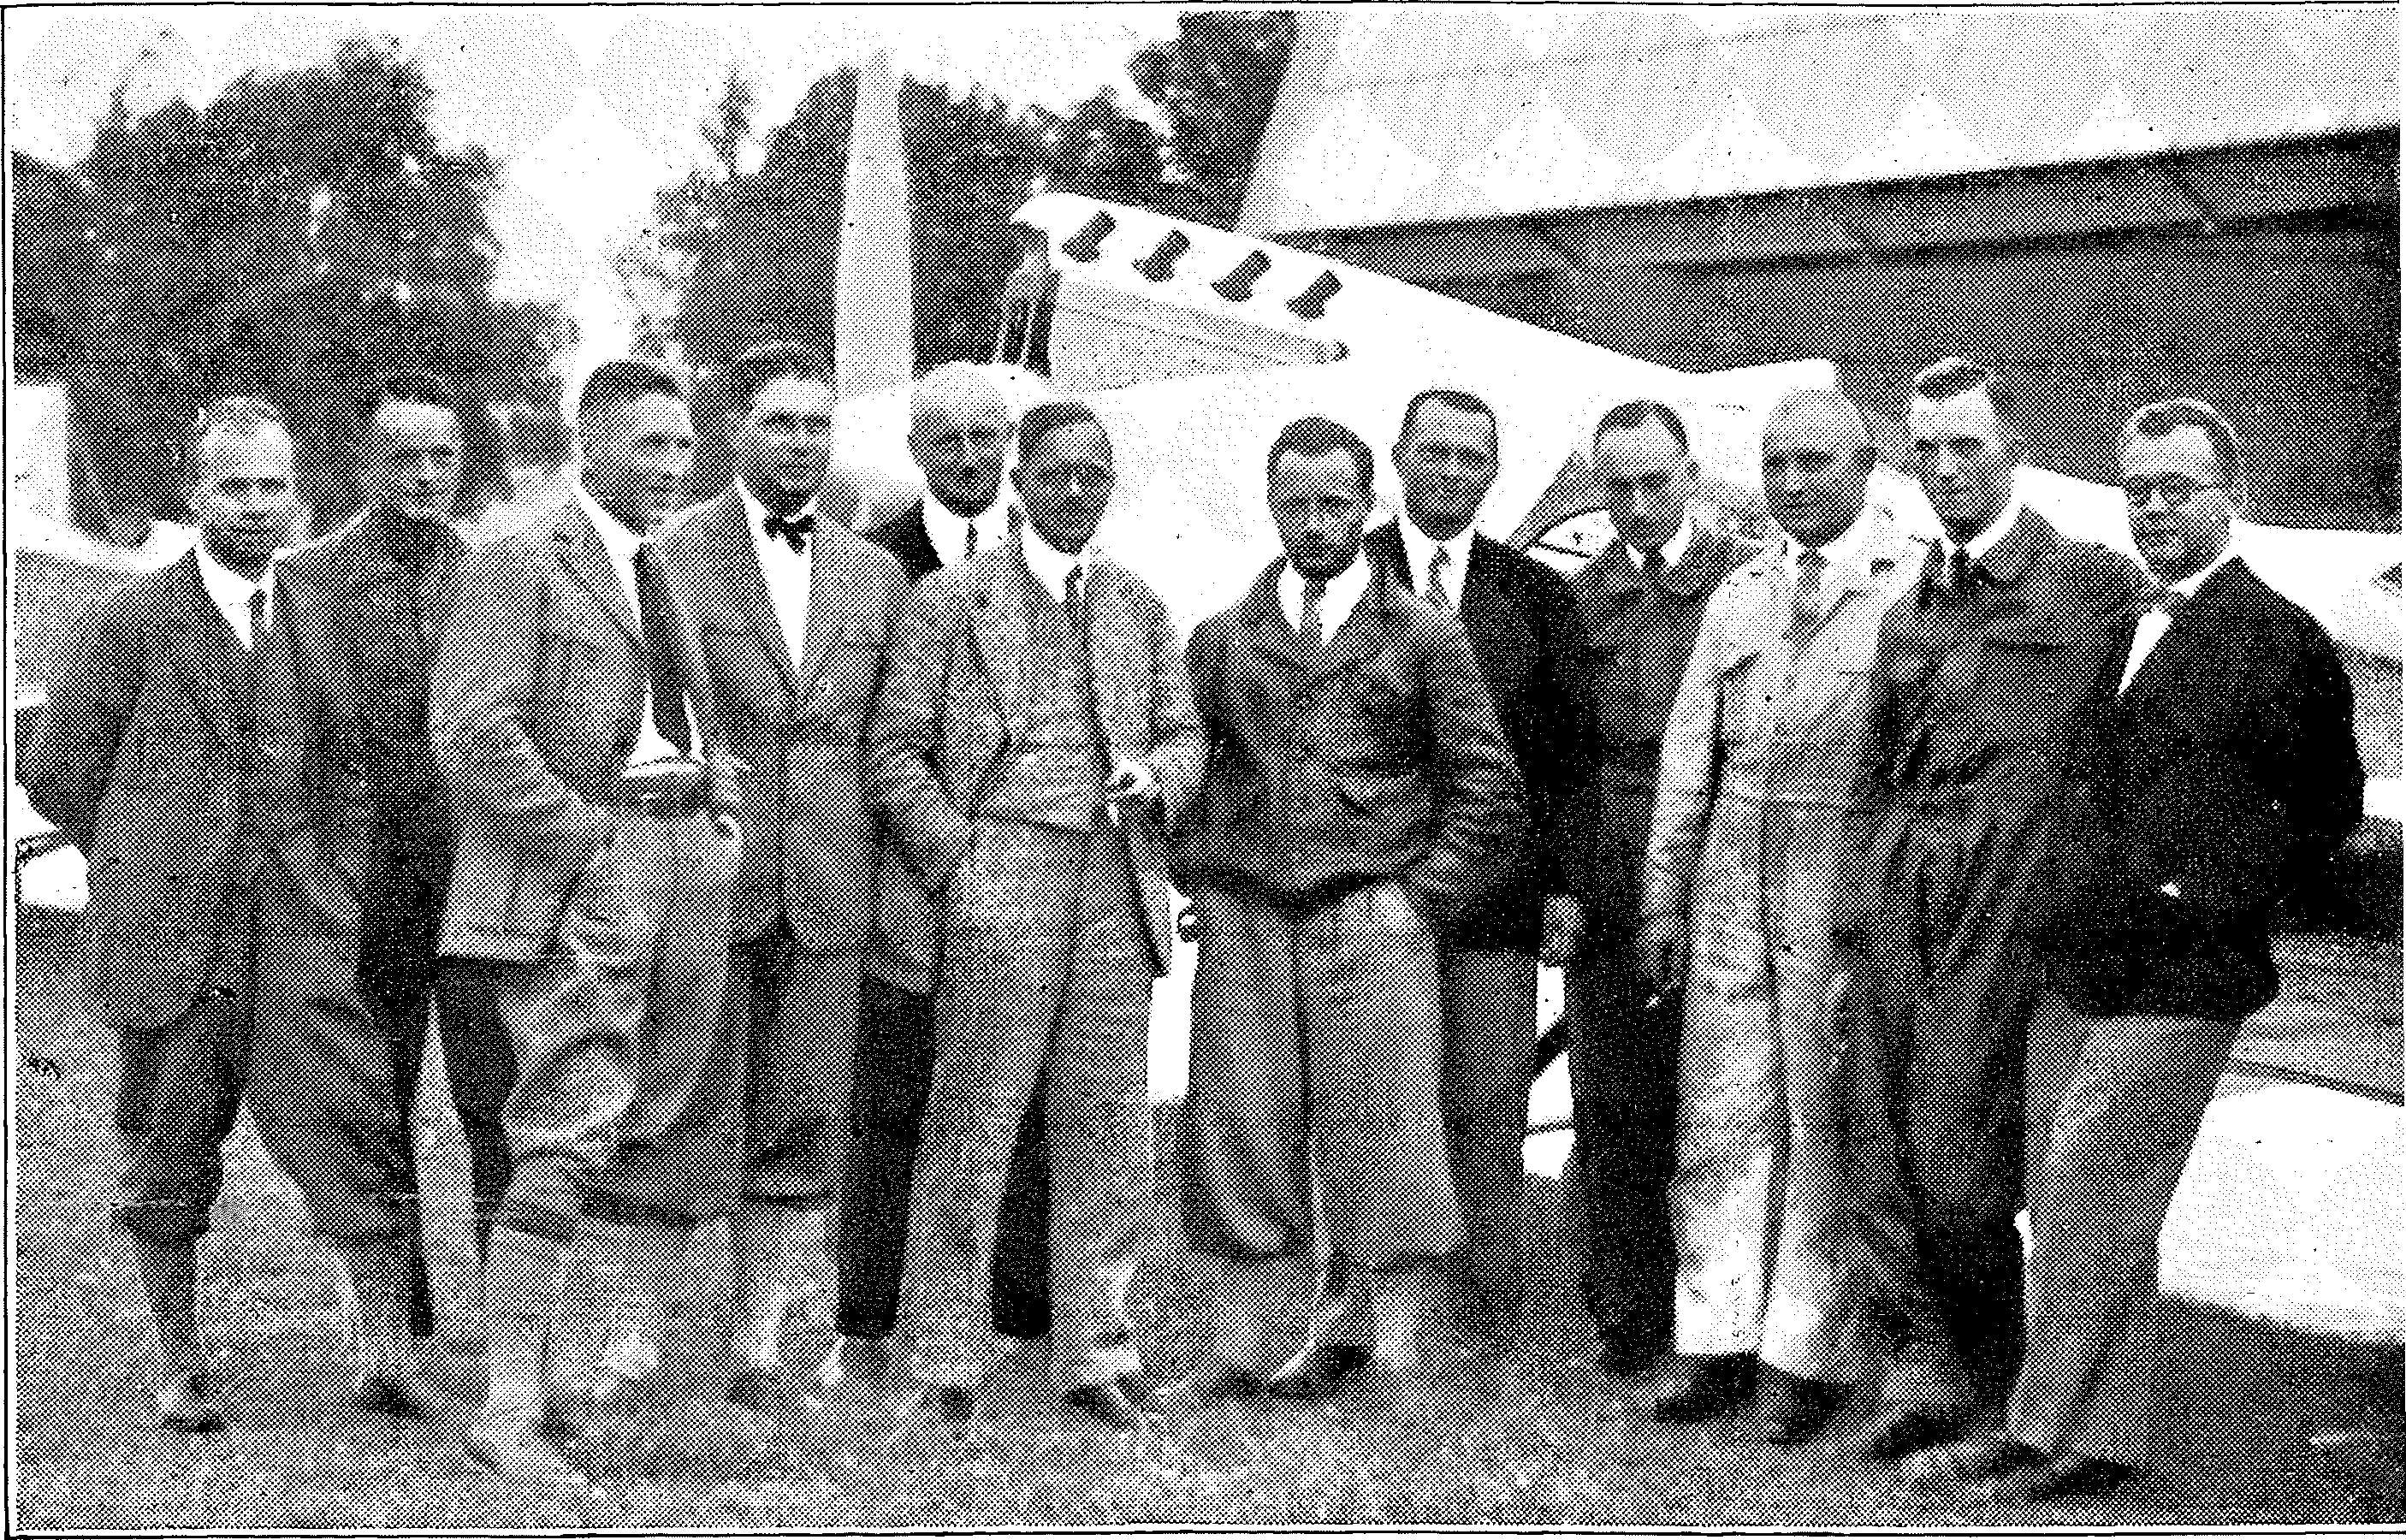 Segelflug, Motorflug und Modellflug sowie Luftfahrt und Luftverkehr im Deutschen Reich (Weimarer Republik) im Jahre 1929